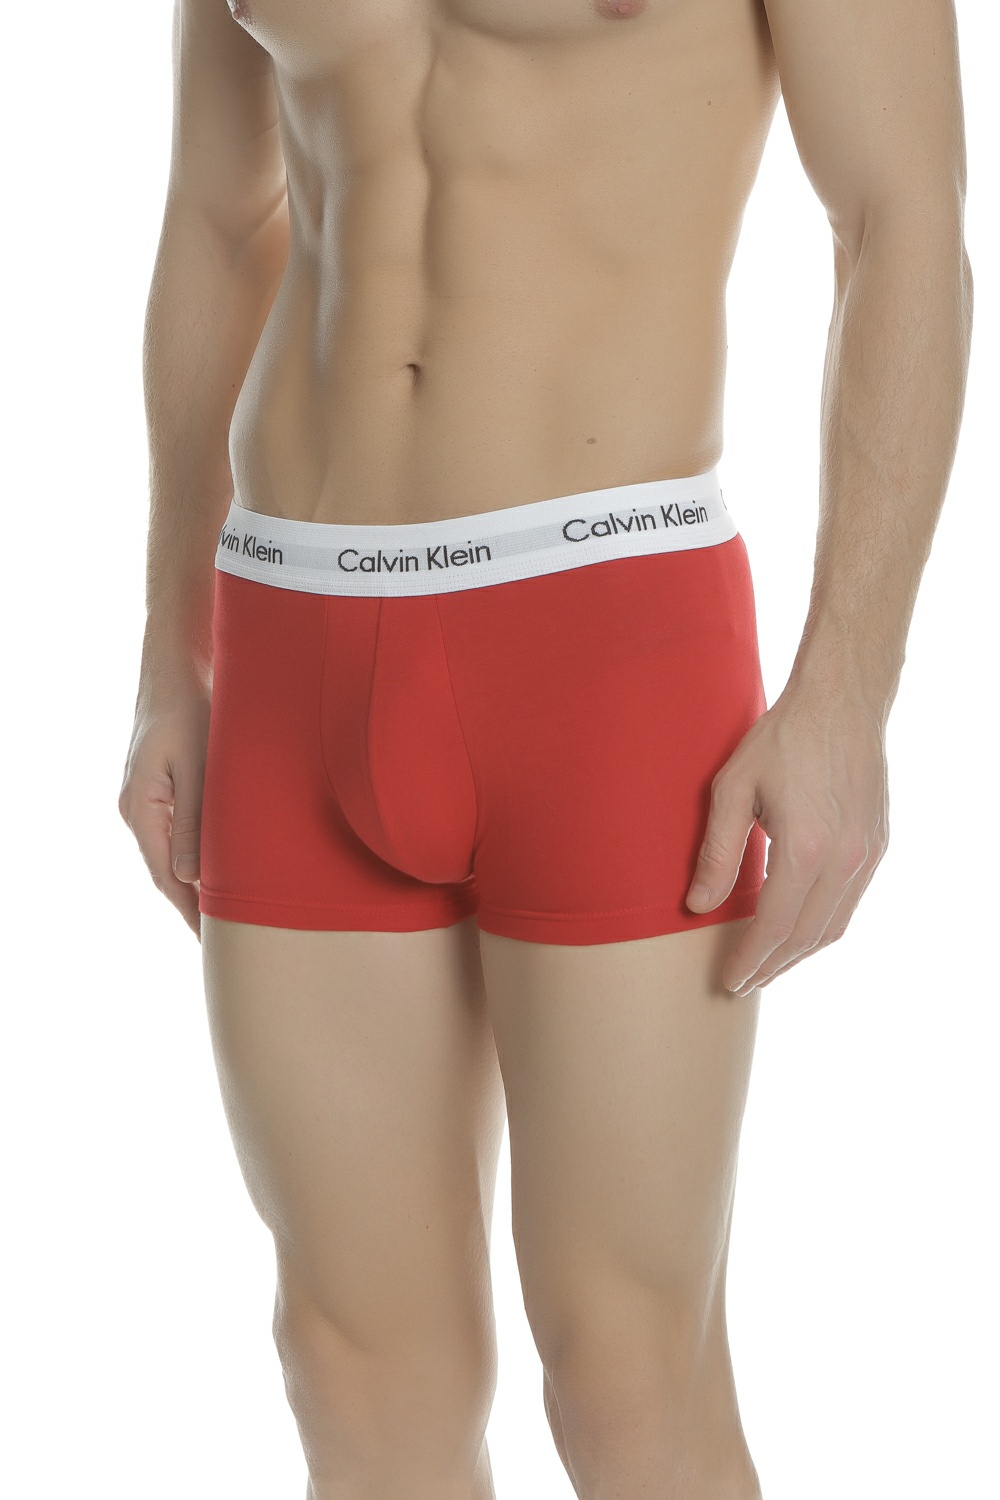 CK UNDERWEAR - Σετ ανδρικά εσώρουχα μπόξερ Calvin Klein Underwear LOW μπλε - κόκκινα - λευκά Ανδρικά/Ρούχα/Εσώρουχα/Μπόξερ